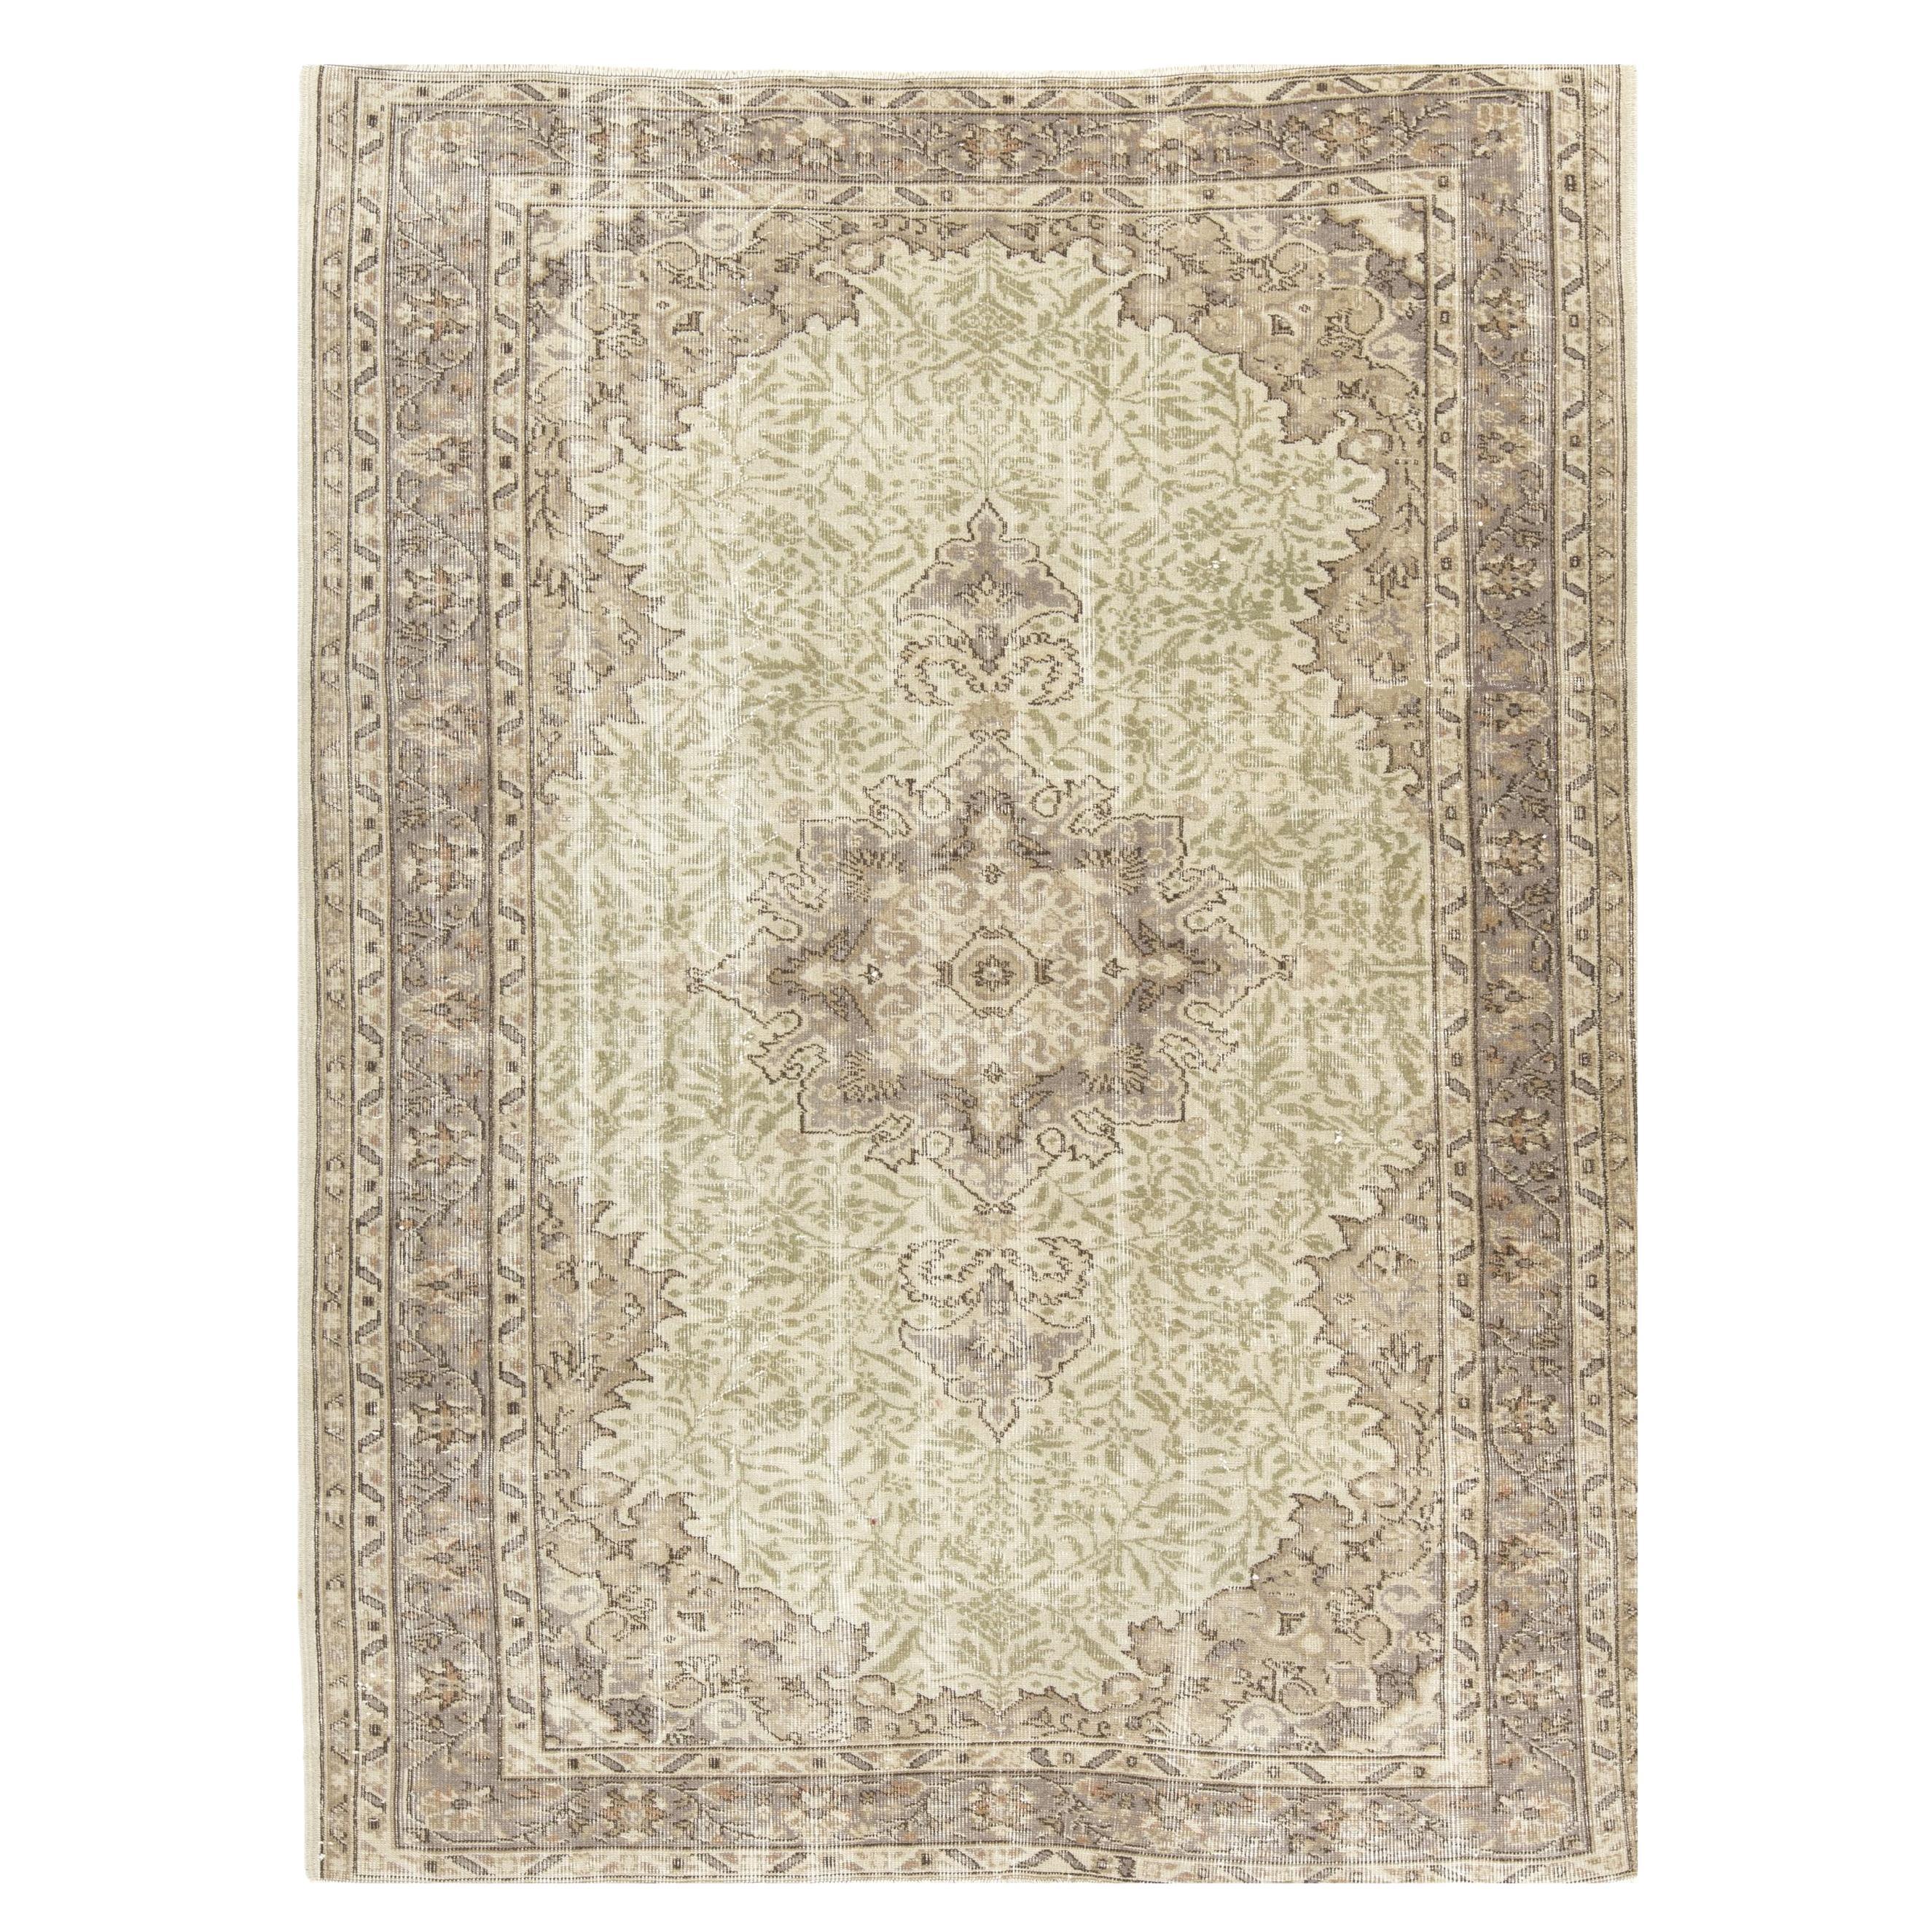 5.6x7.7 Ft Handmade Sun Faded Oushak Area Rug, Medallion Design Wool Carpet (tapis de laine)